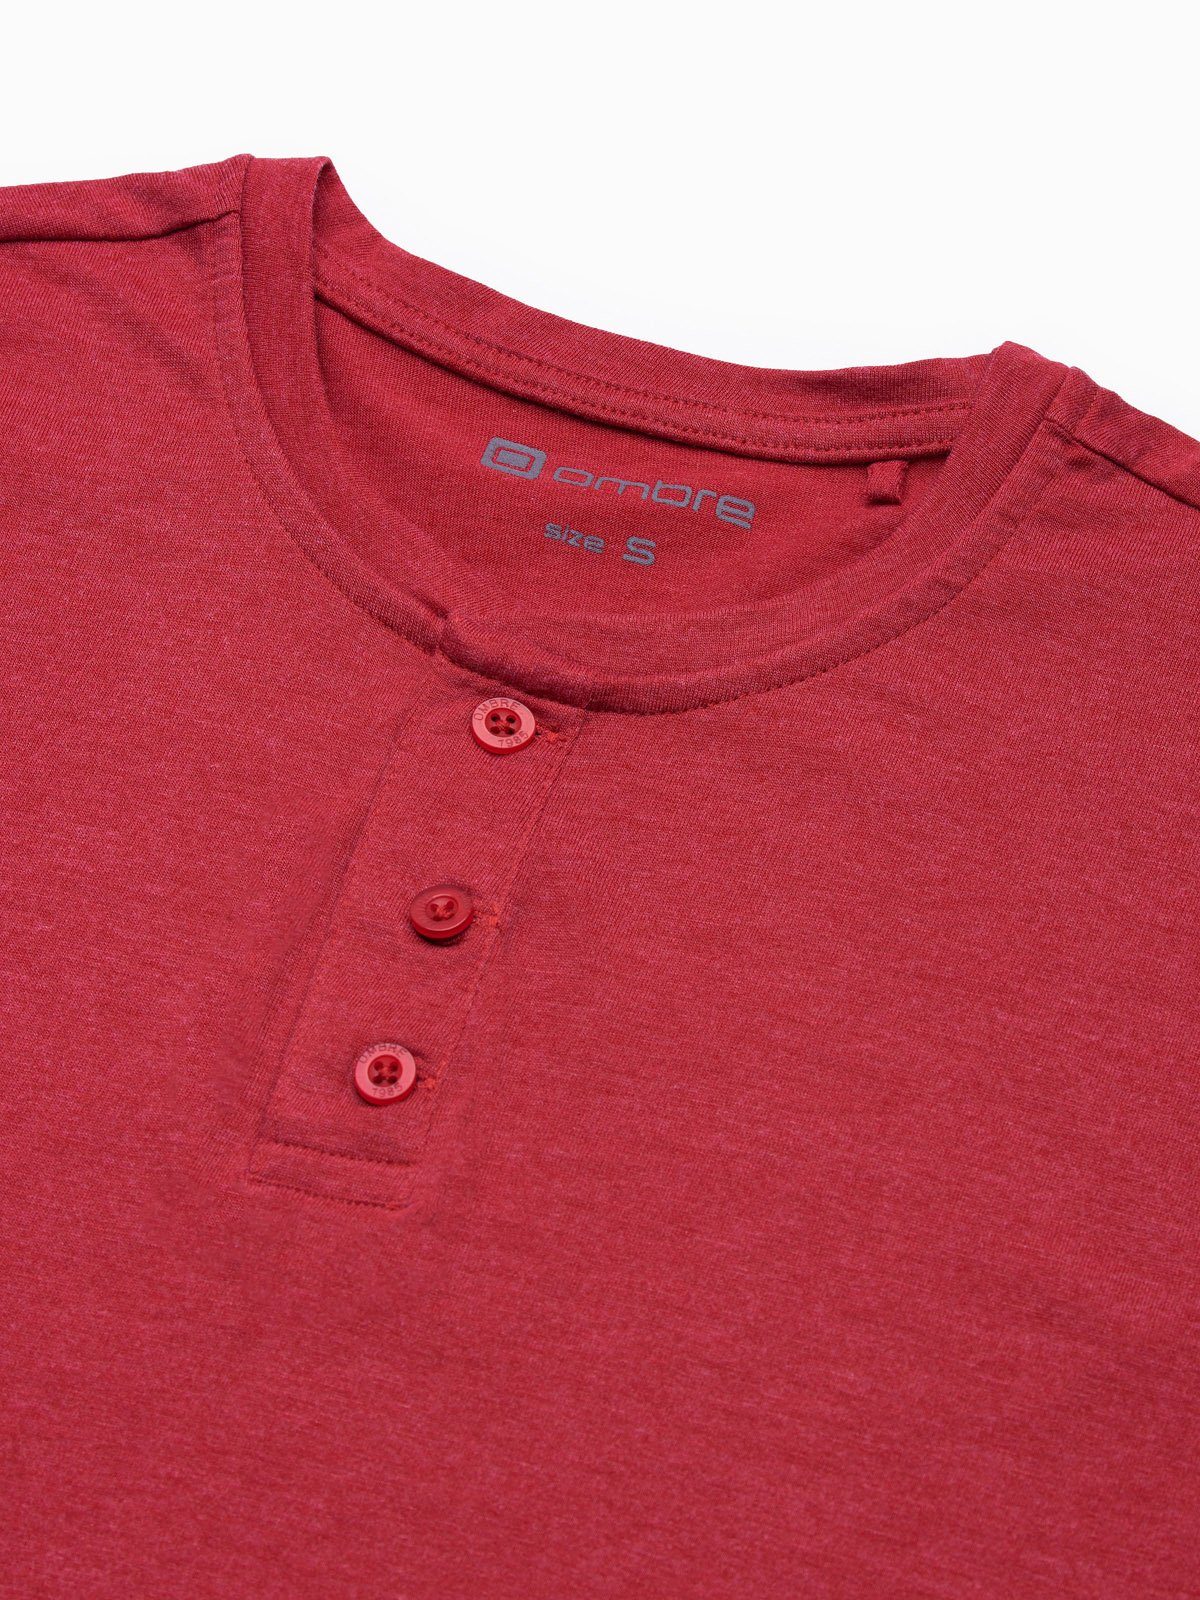 OMBRE T-Shirt Einfarbiges Herren-T-Shirt - meliert rot S1390 M